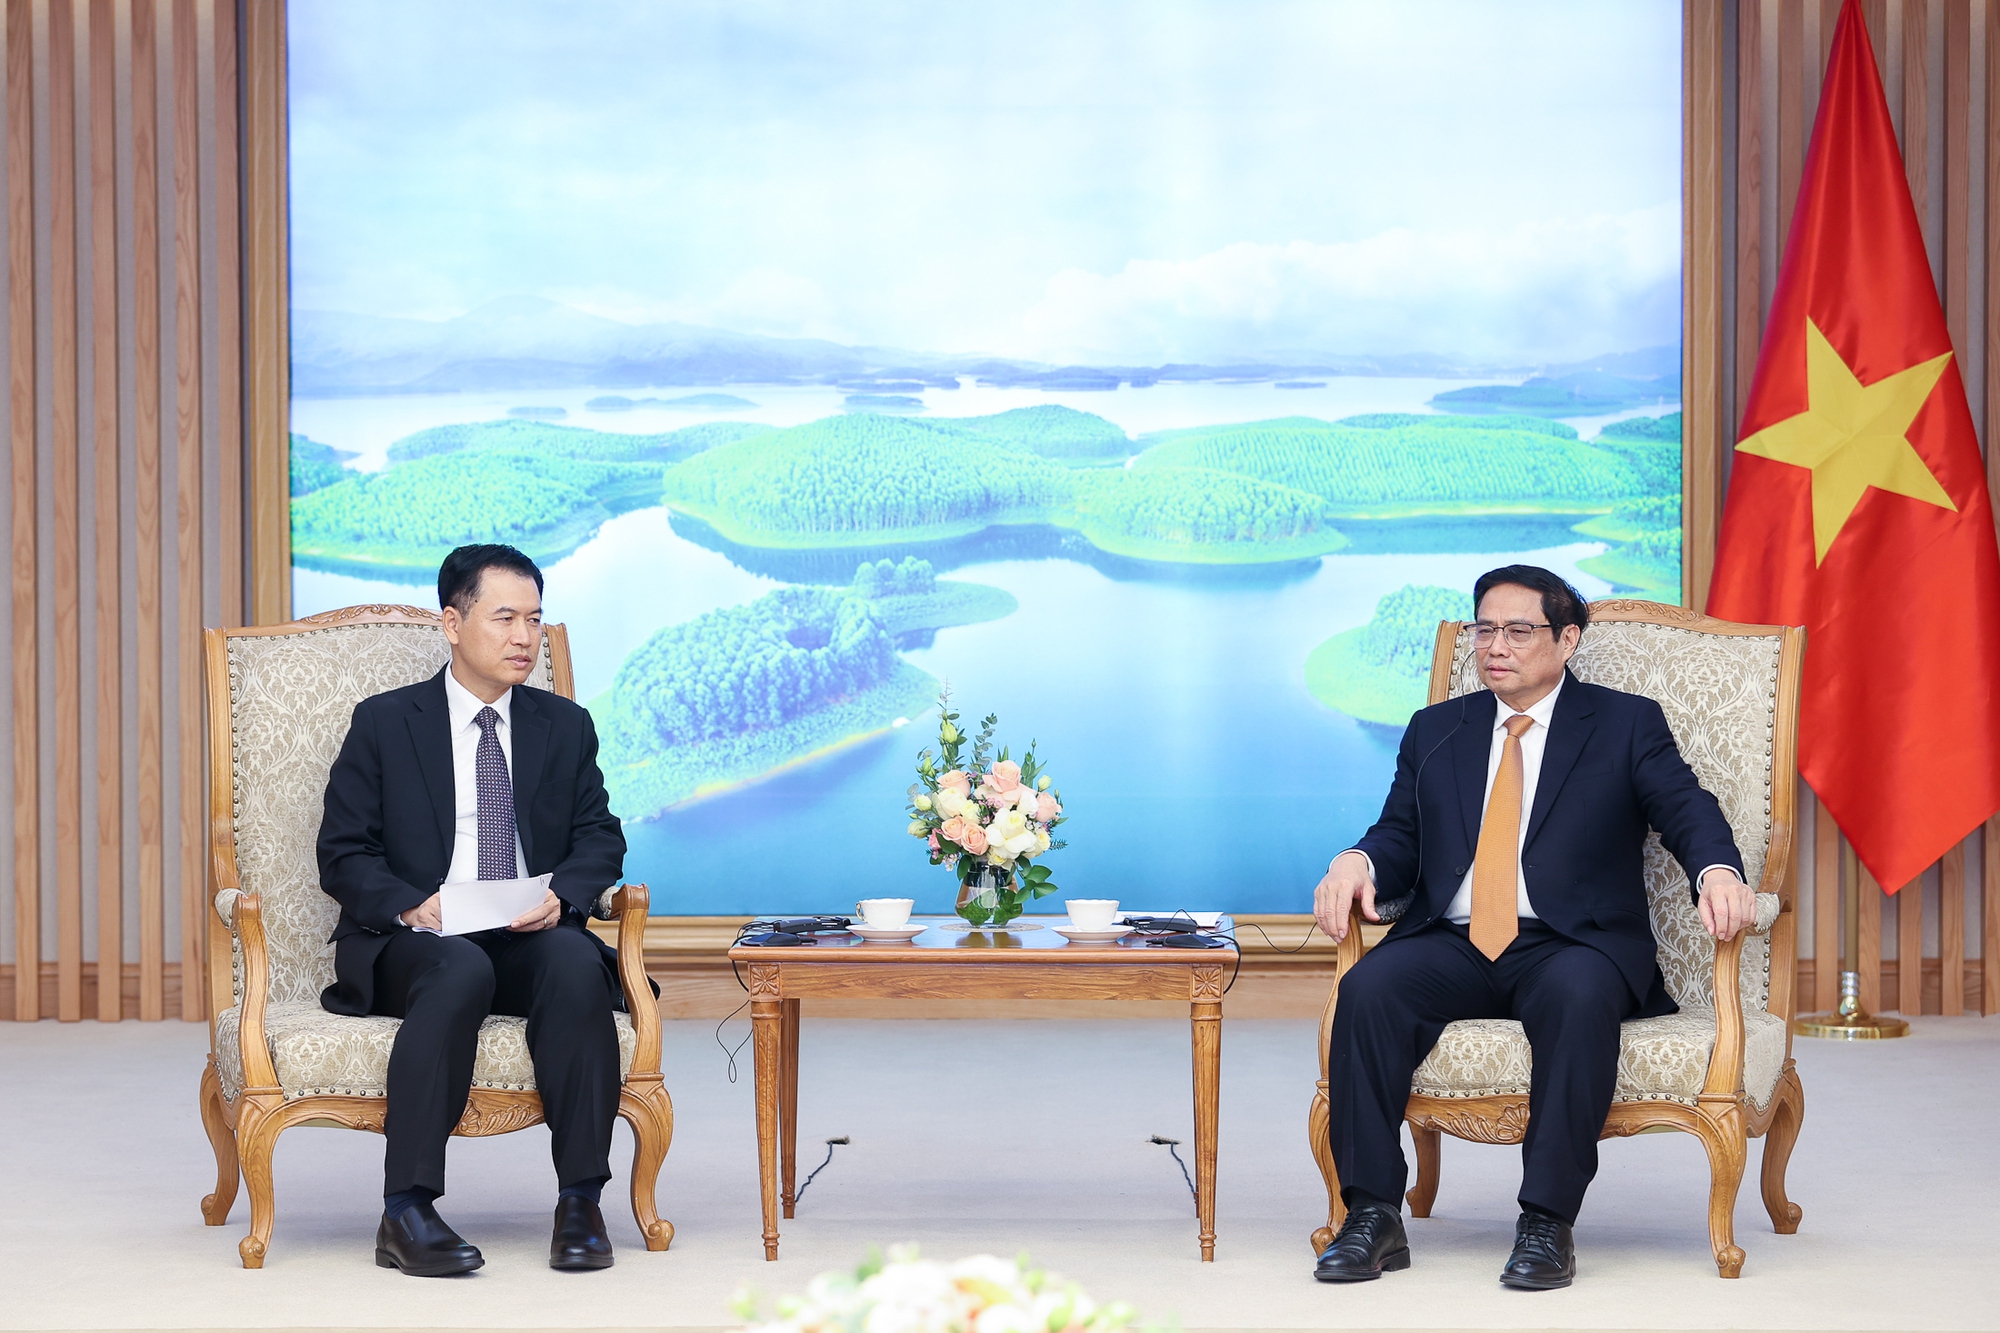 Thủ tướng đề nghị tăng cường kết nối giao thông, thúc đẩy thương mại Việt Nam - Lào - Ảnh 3.